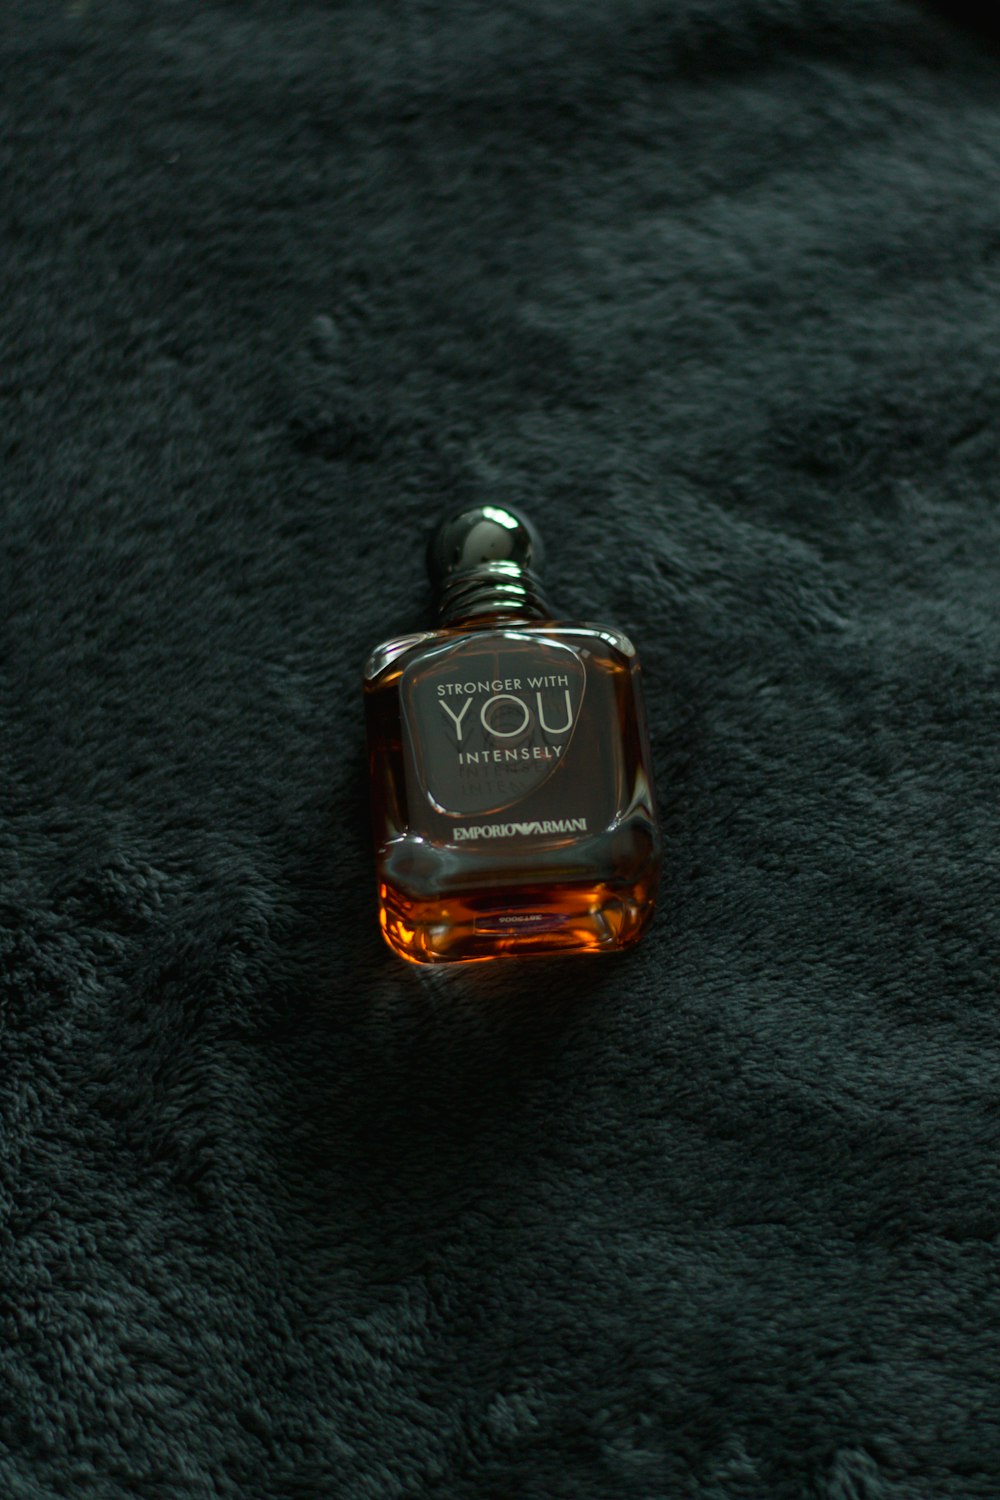 Black and gold perfume bottle photo – Free Paris Image on Unsplash